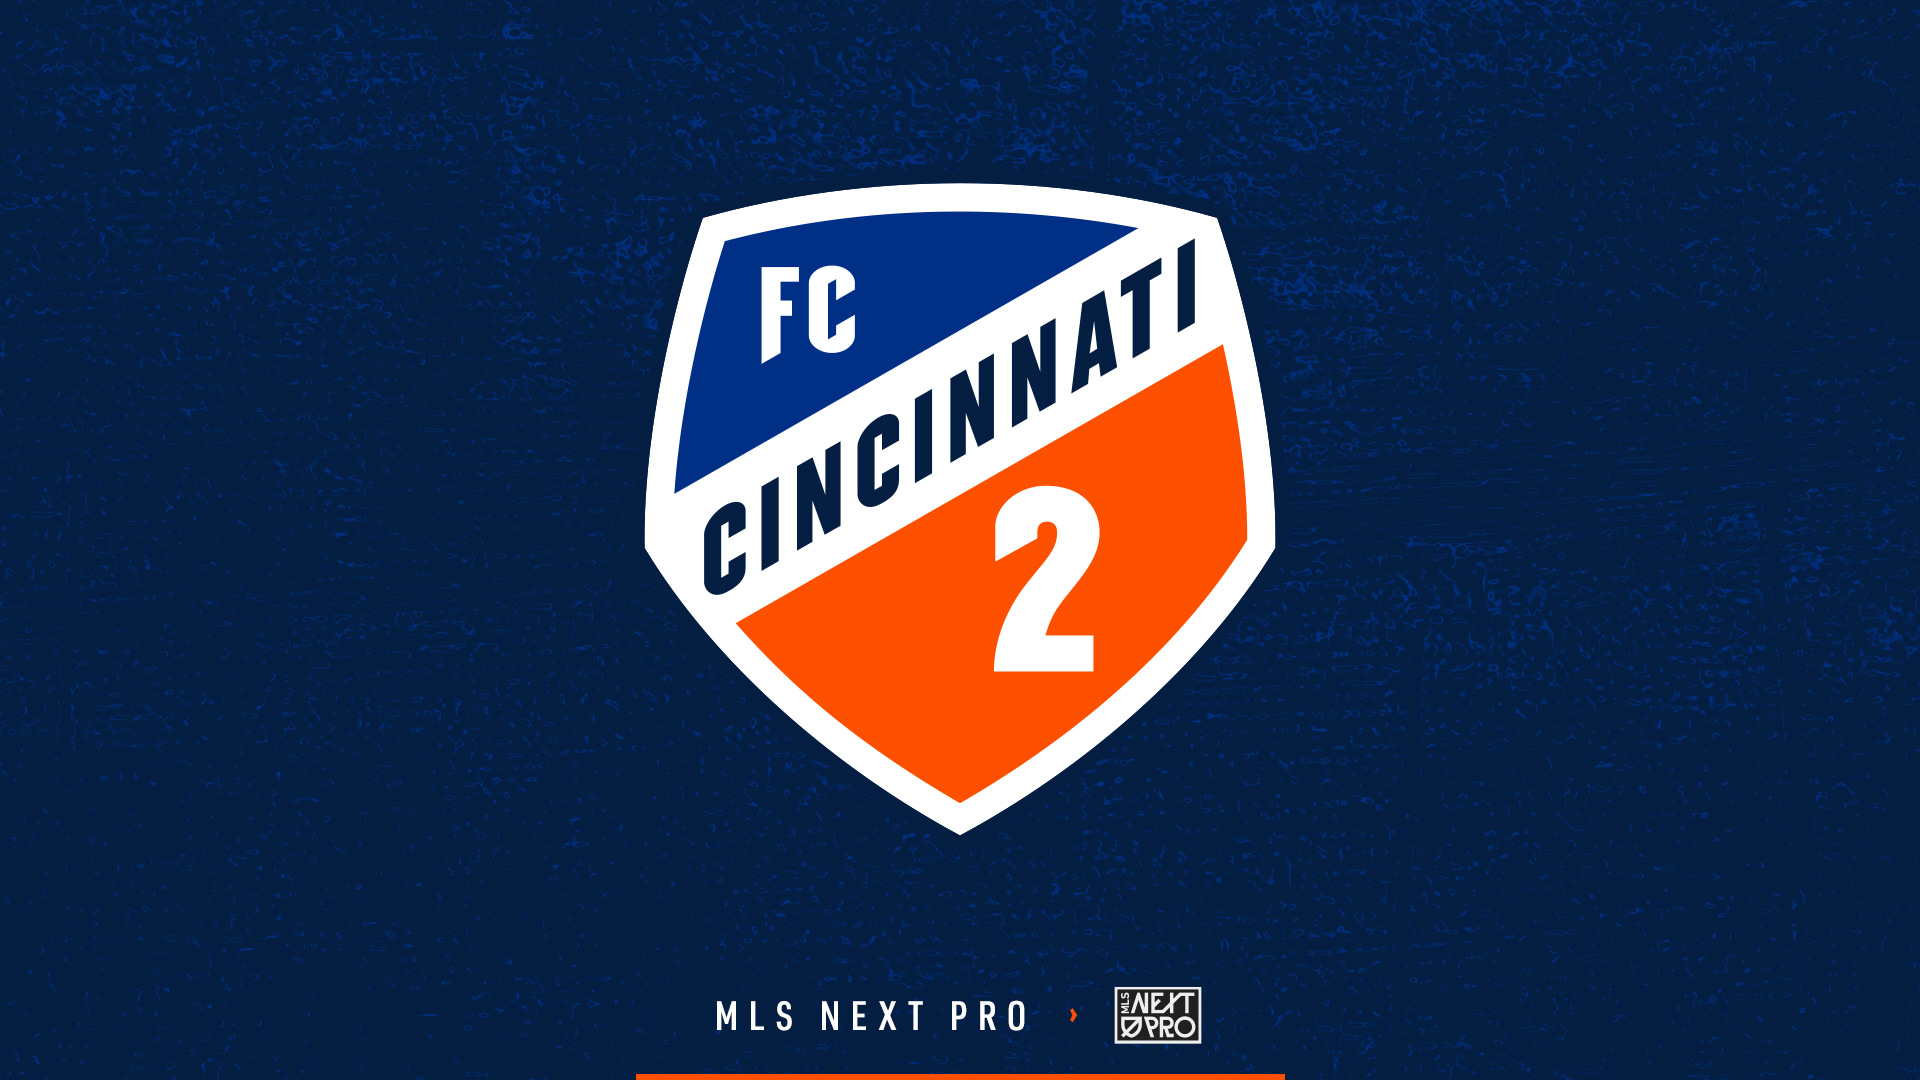 FC Cincinnati unveil MLS NEXT Pro team, FC Cincinnati 2 - FC Cincinnati